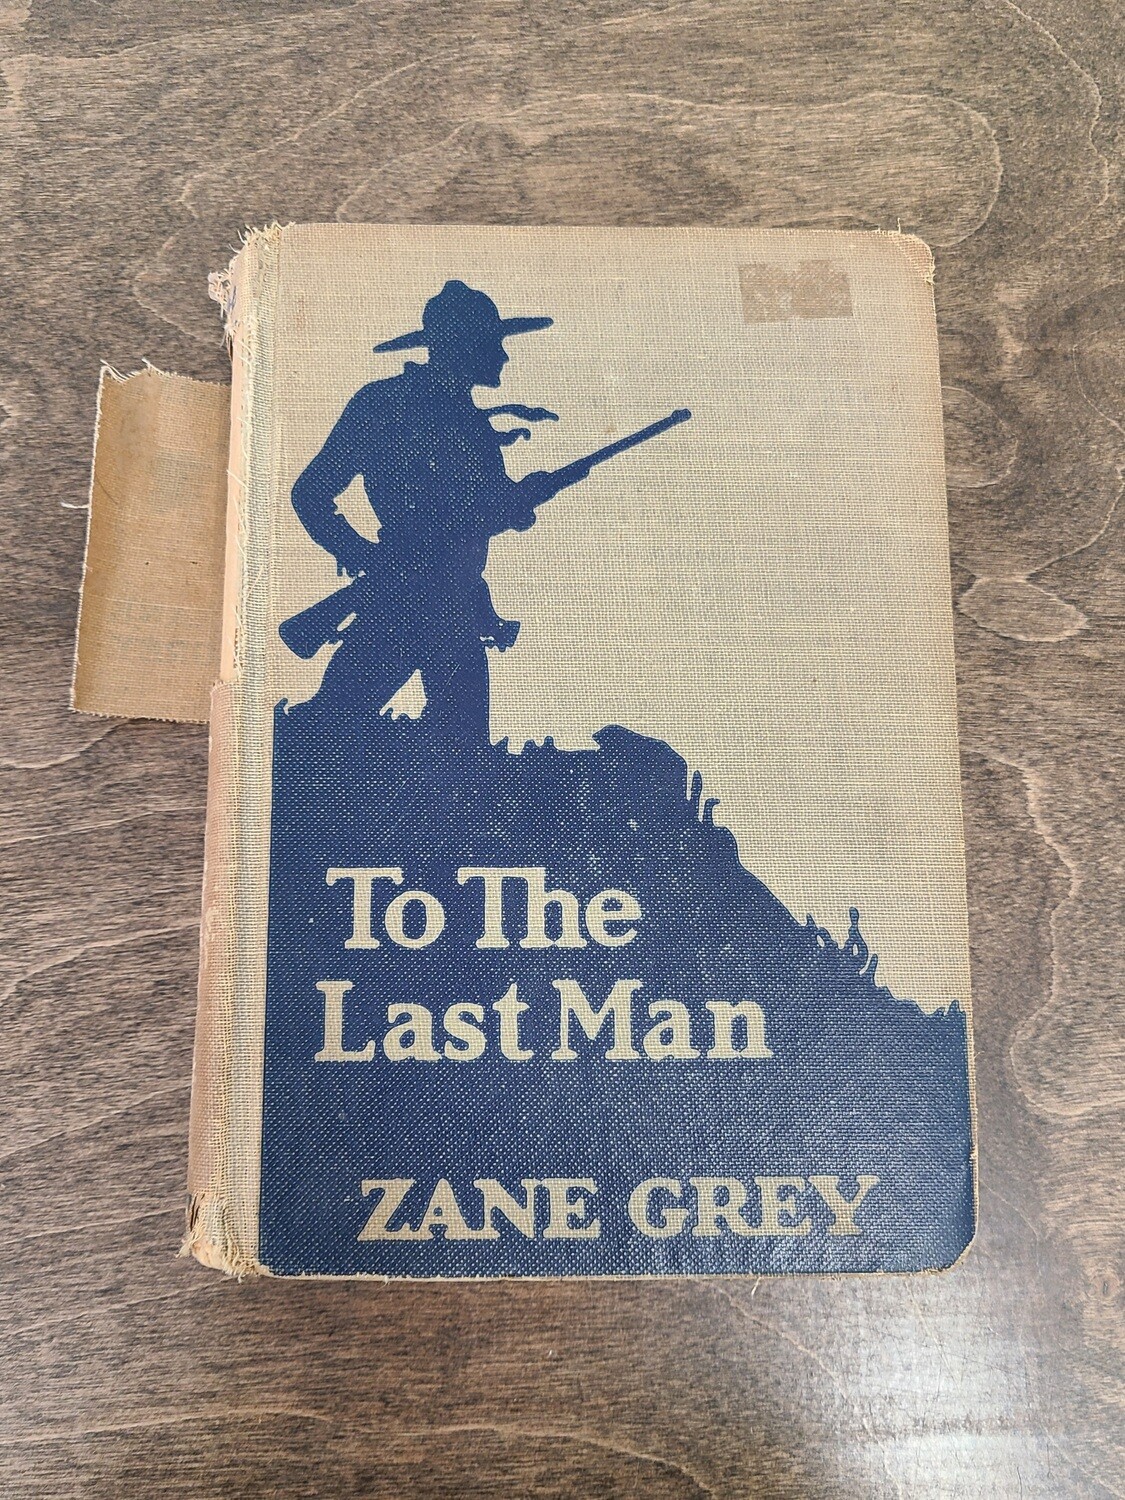 To The Last Man by Zane Grey